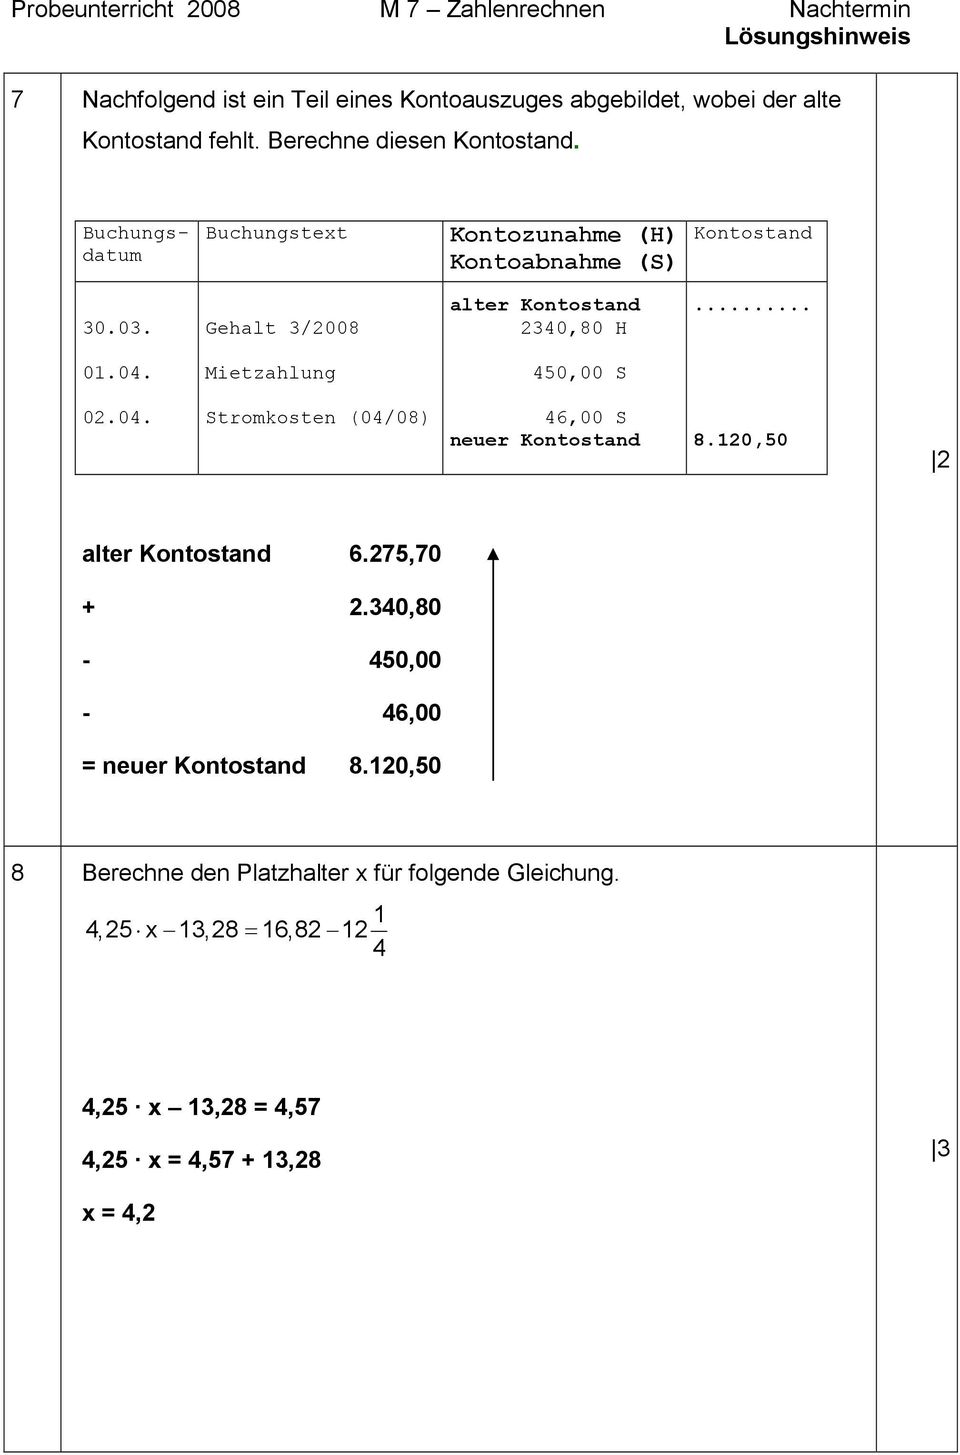 0. Gehalt /2008 alter Kontostand 240,80 H... 01.04. Mietzahlung 450,00 S 02.04. Stromkosten (04/08) 46,00 S neuer Kontostand 8.